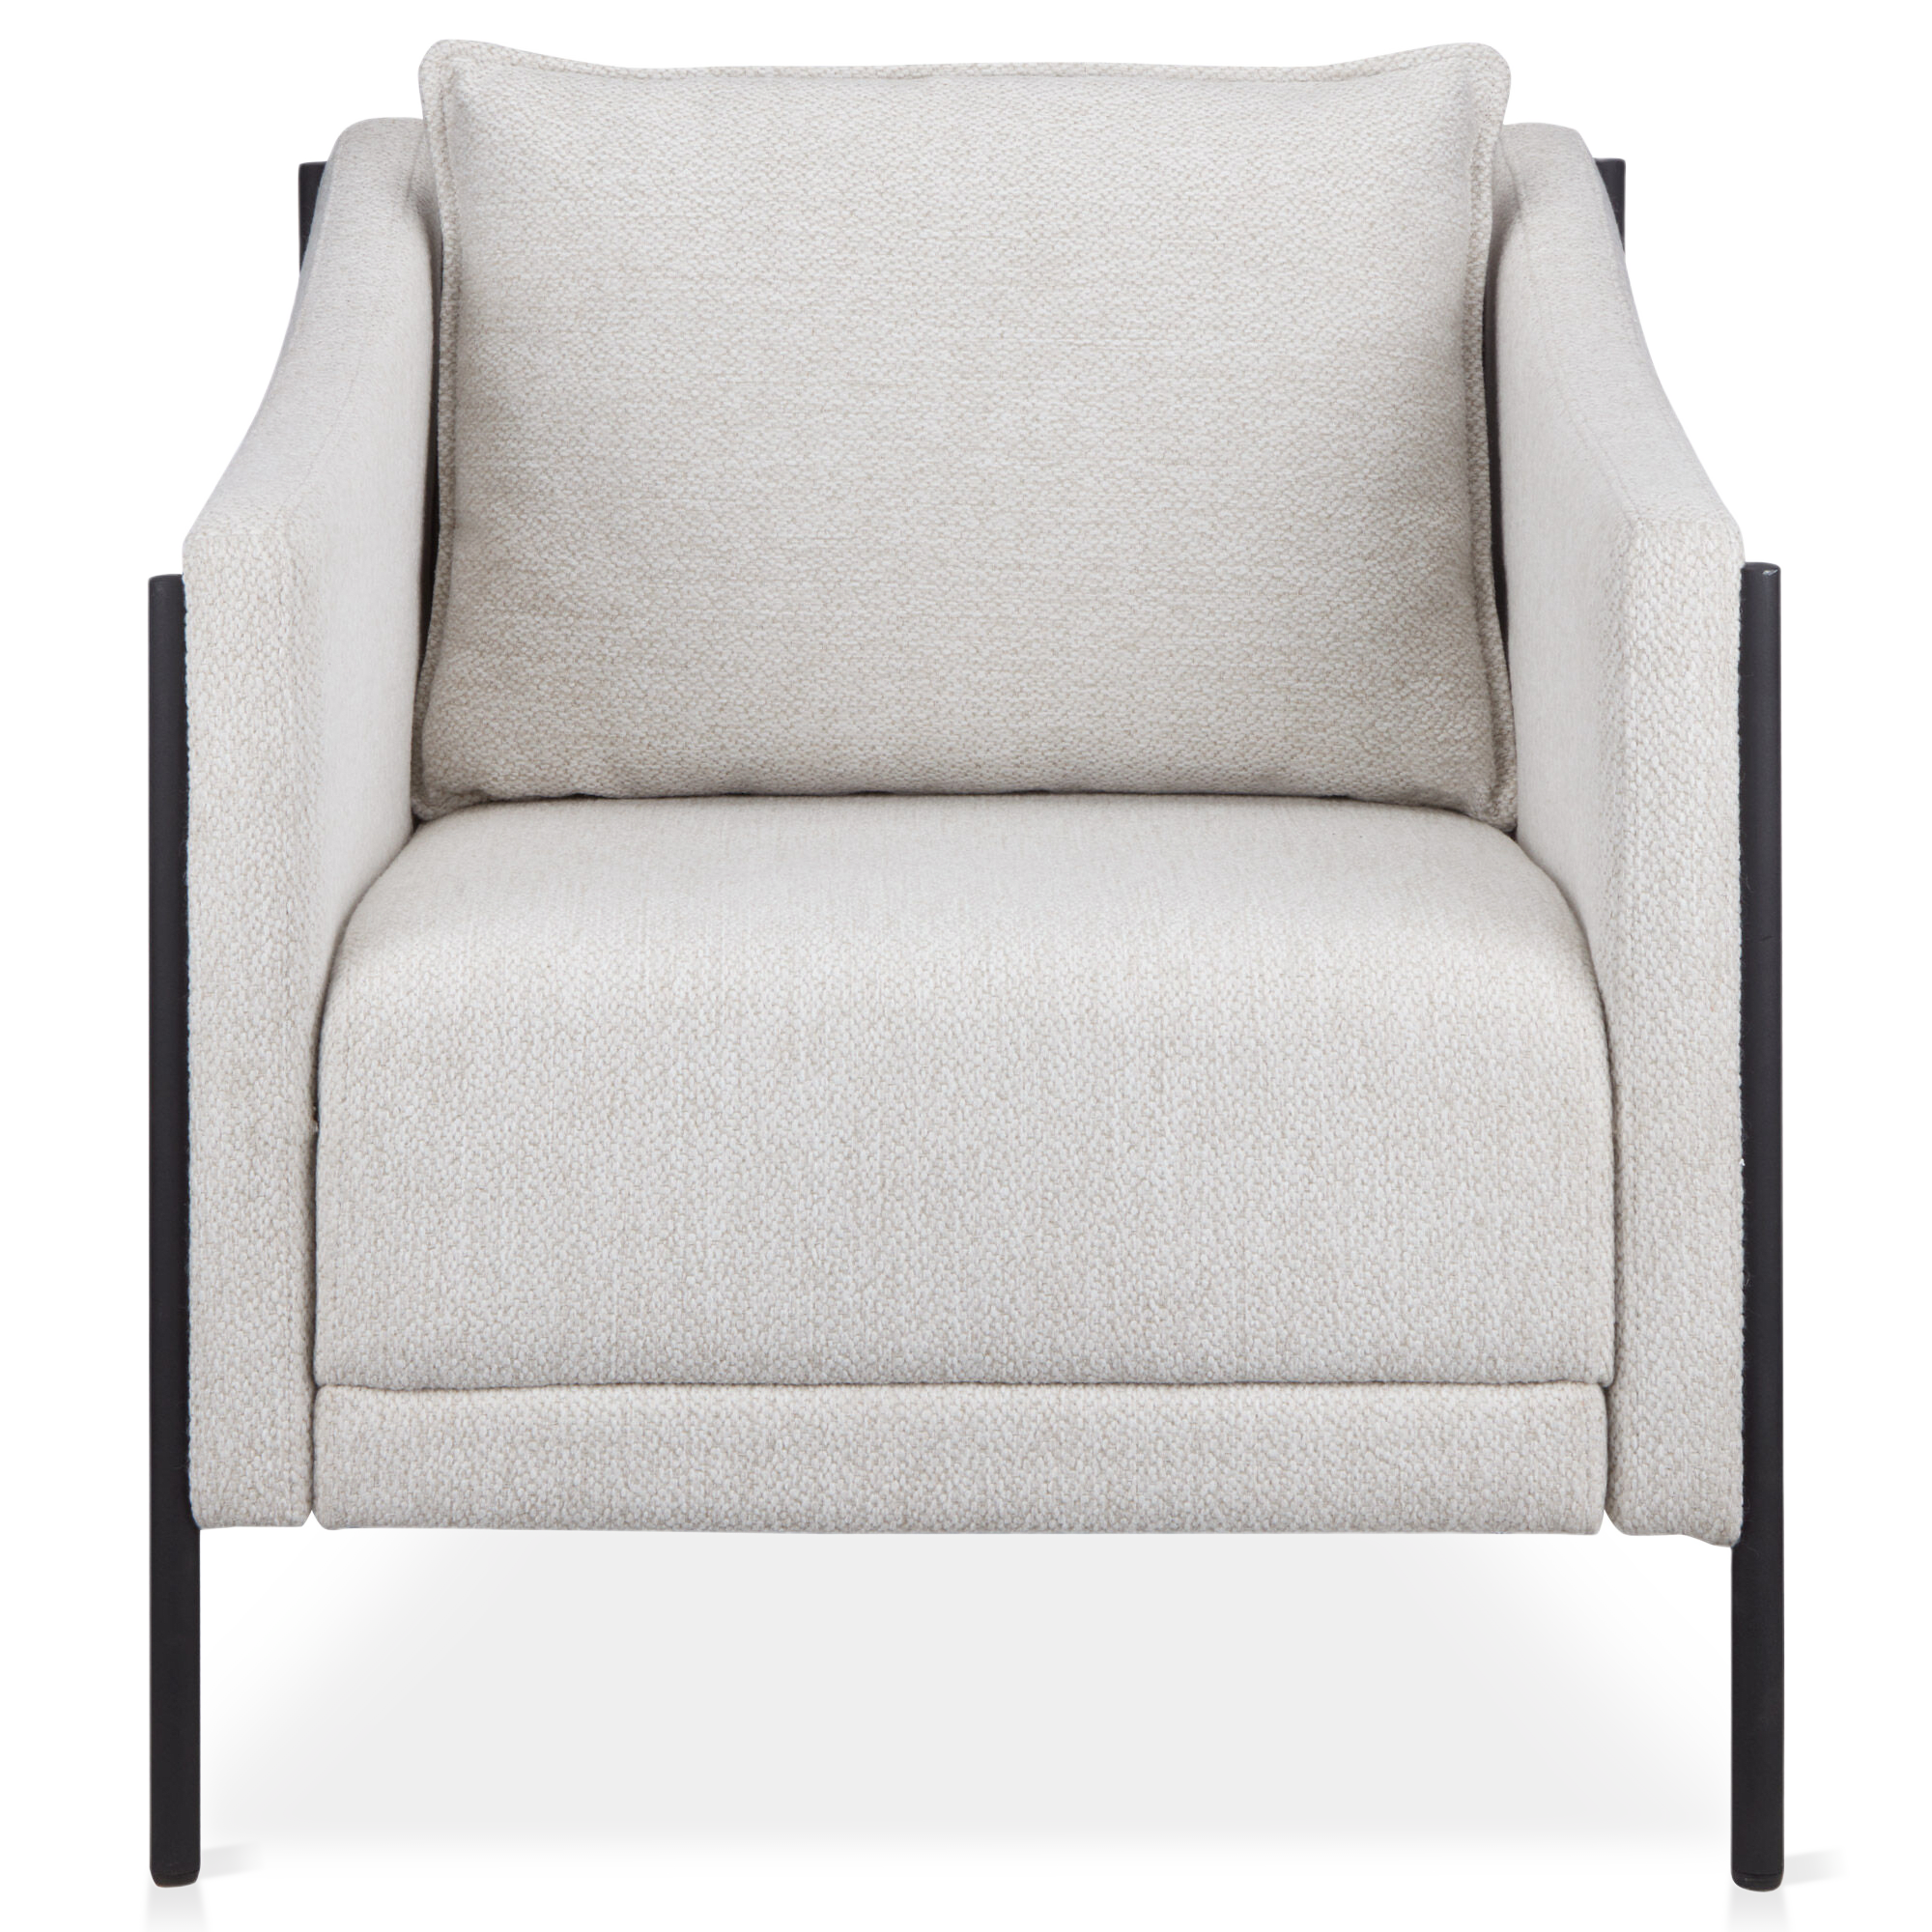 Metal & Fabric Lounge Chair in Oatmeal